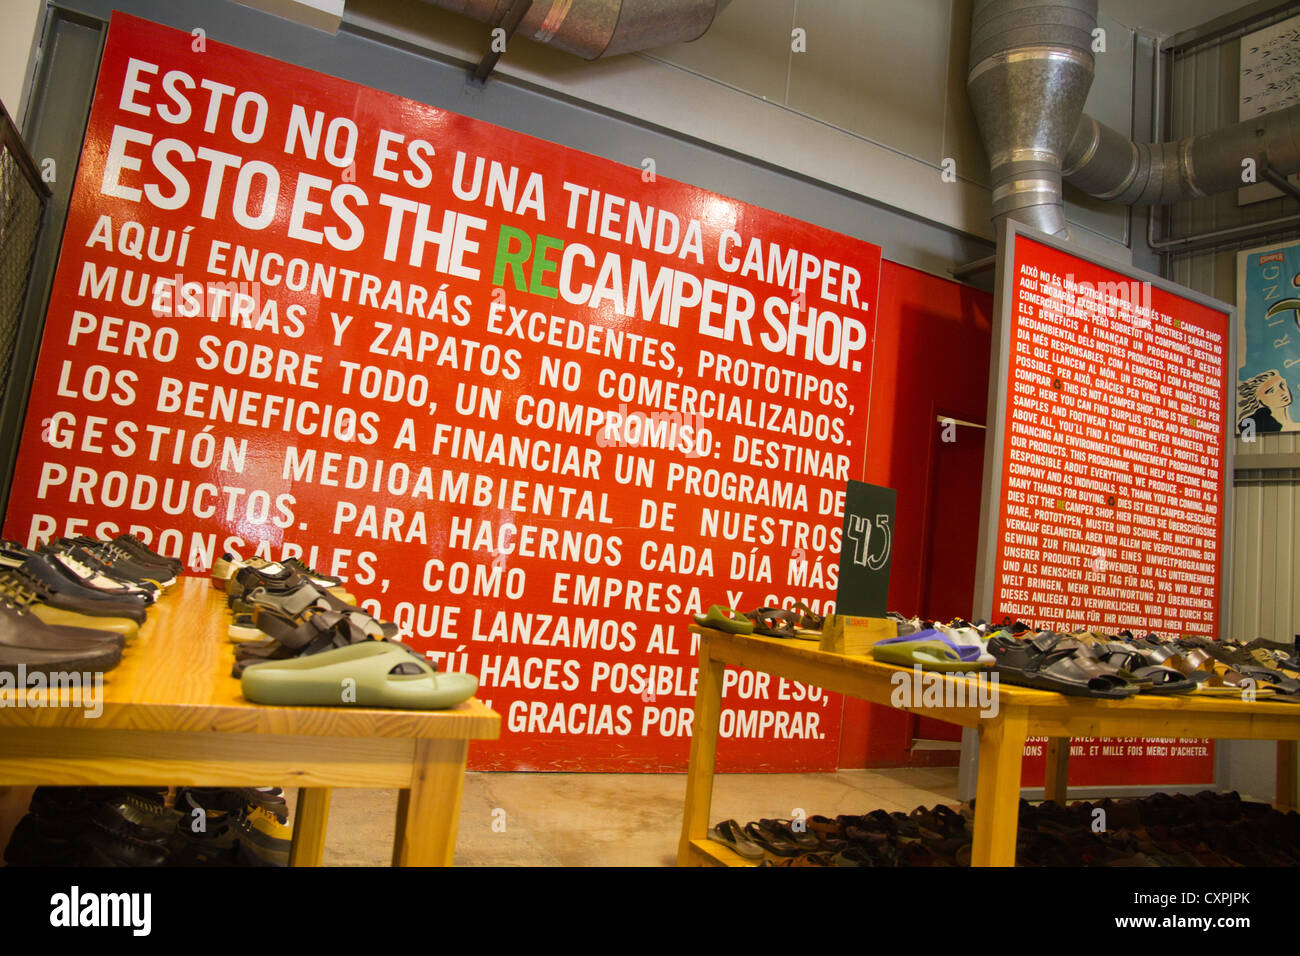 Tienda de Camper tienda Inca España Fotografía de stock -